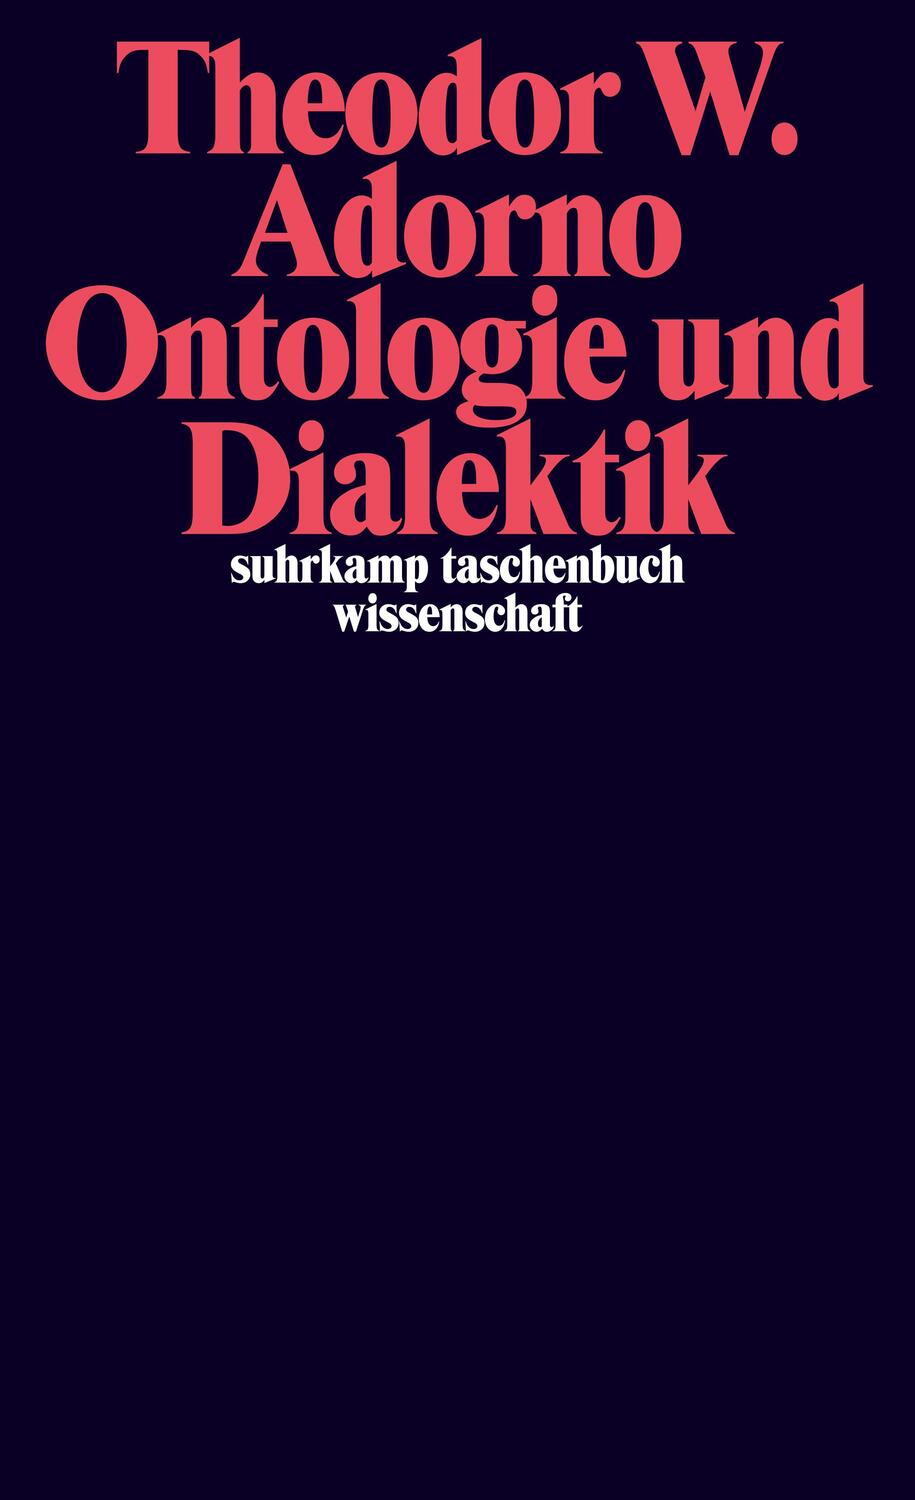 Ontologie und Dialektik - Adorno, Theodor W.